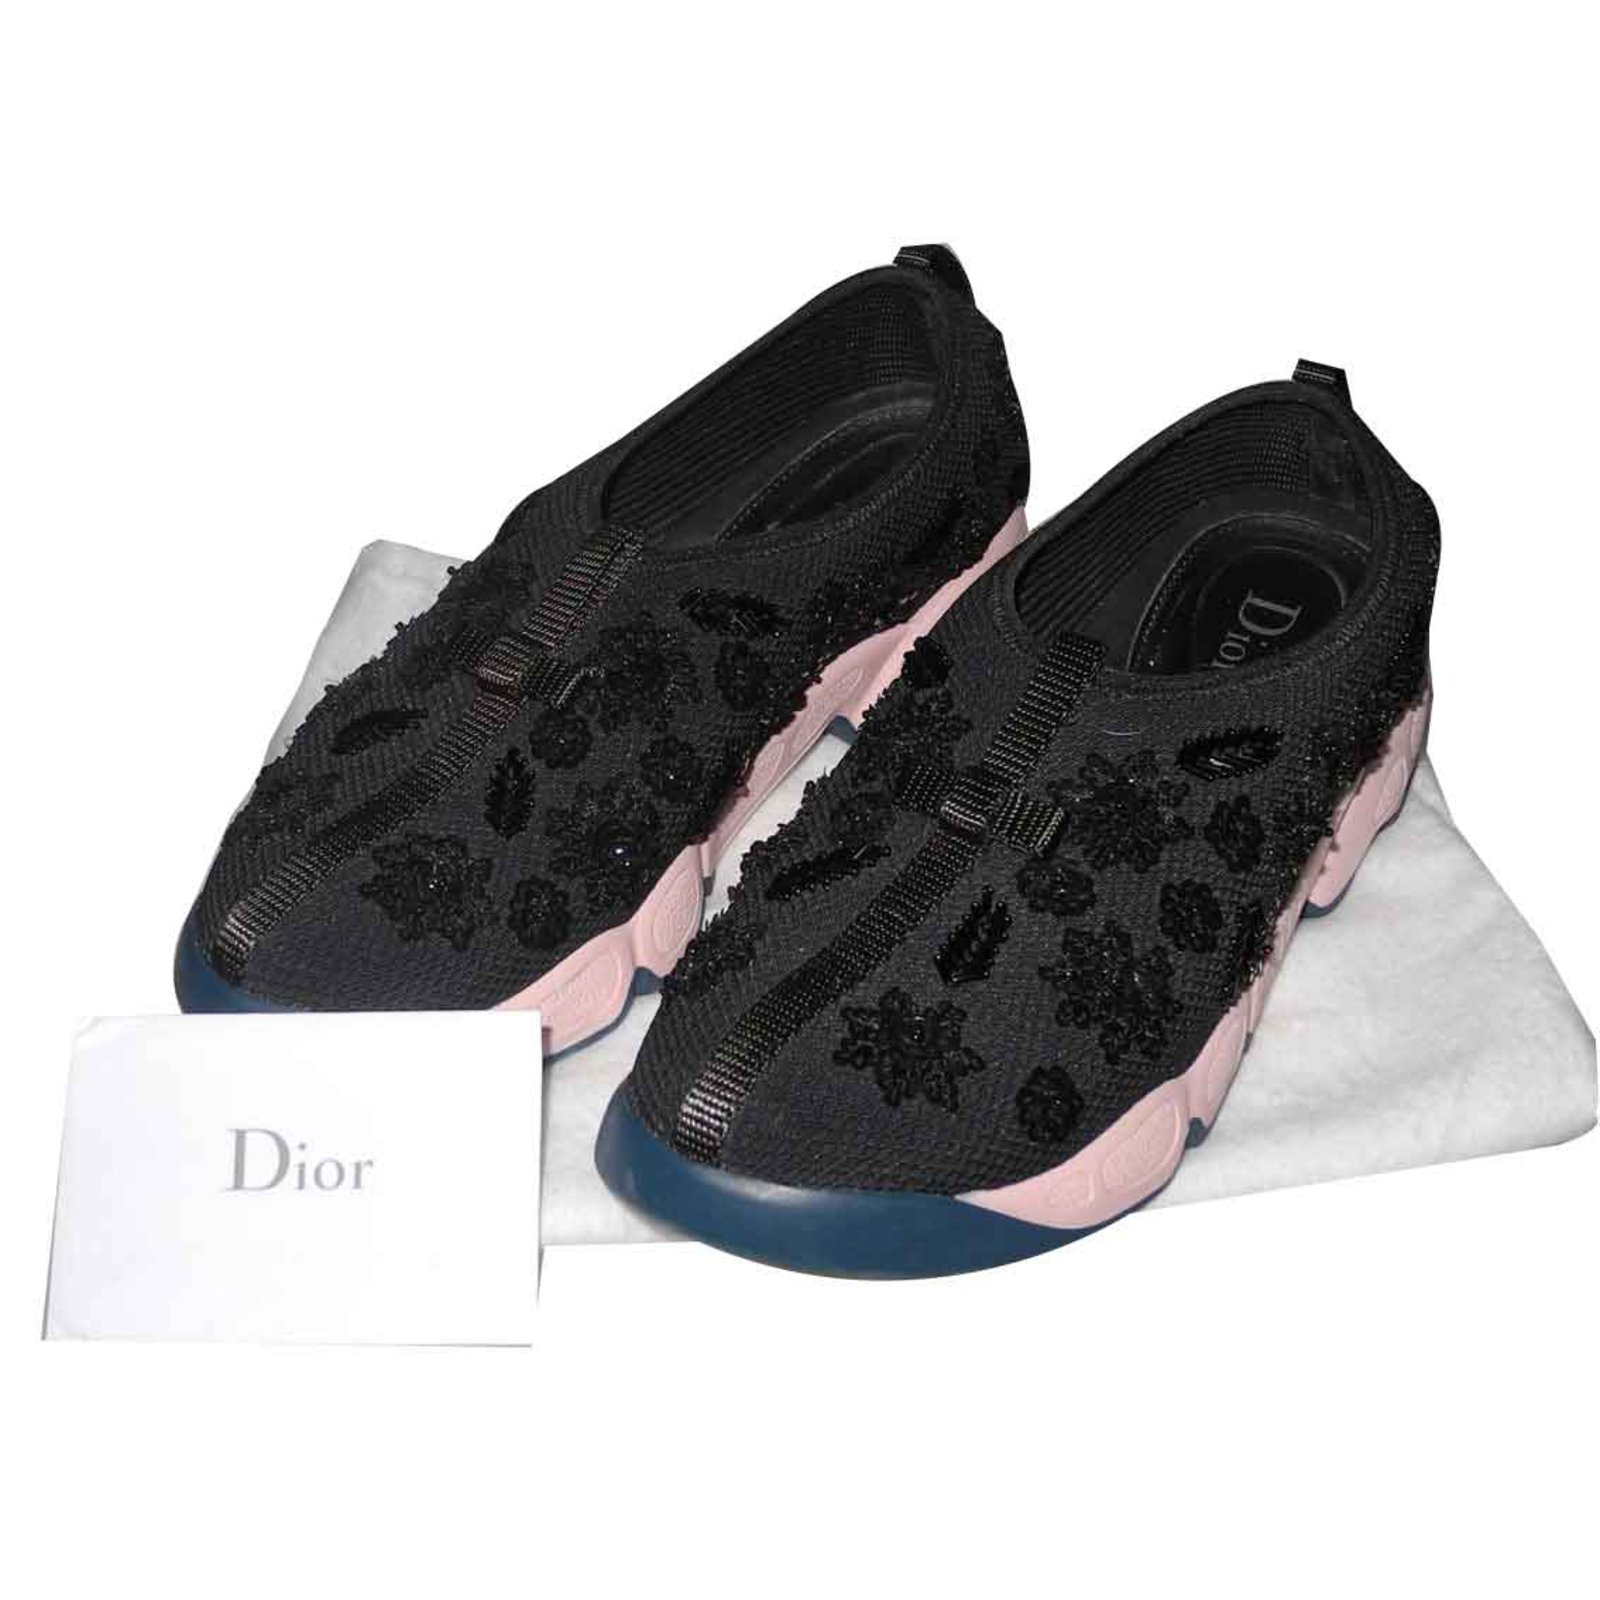 dior fusion sneaker in black technical fabric